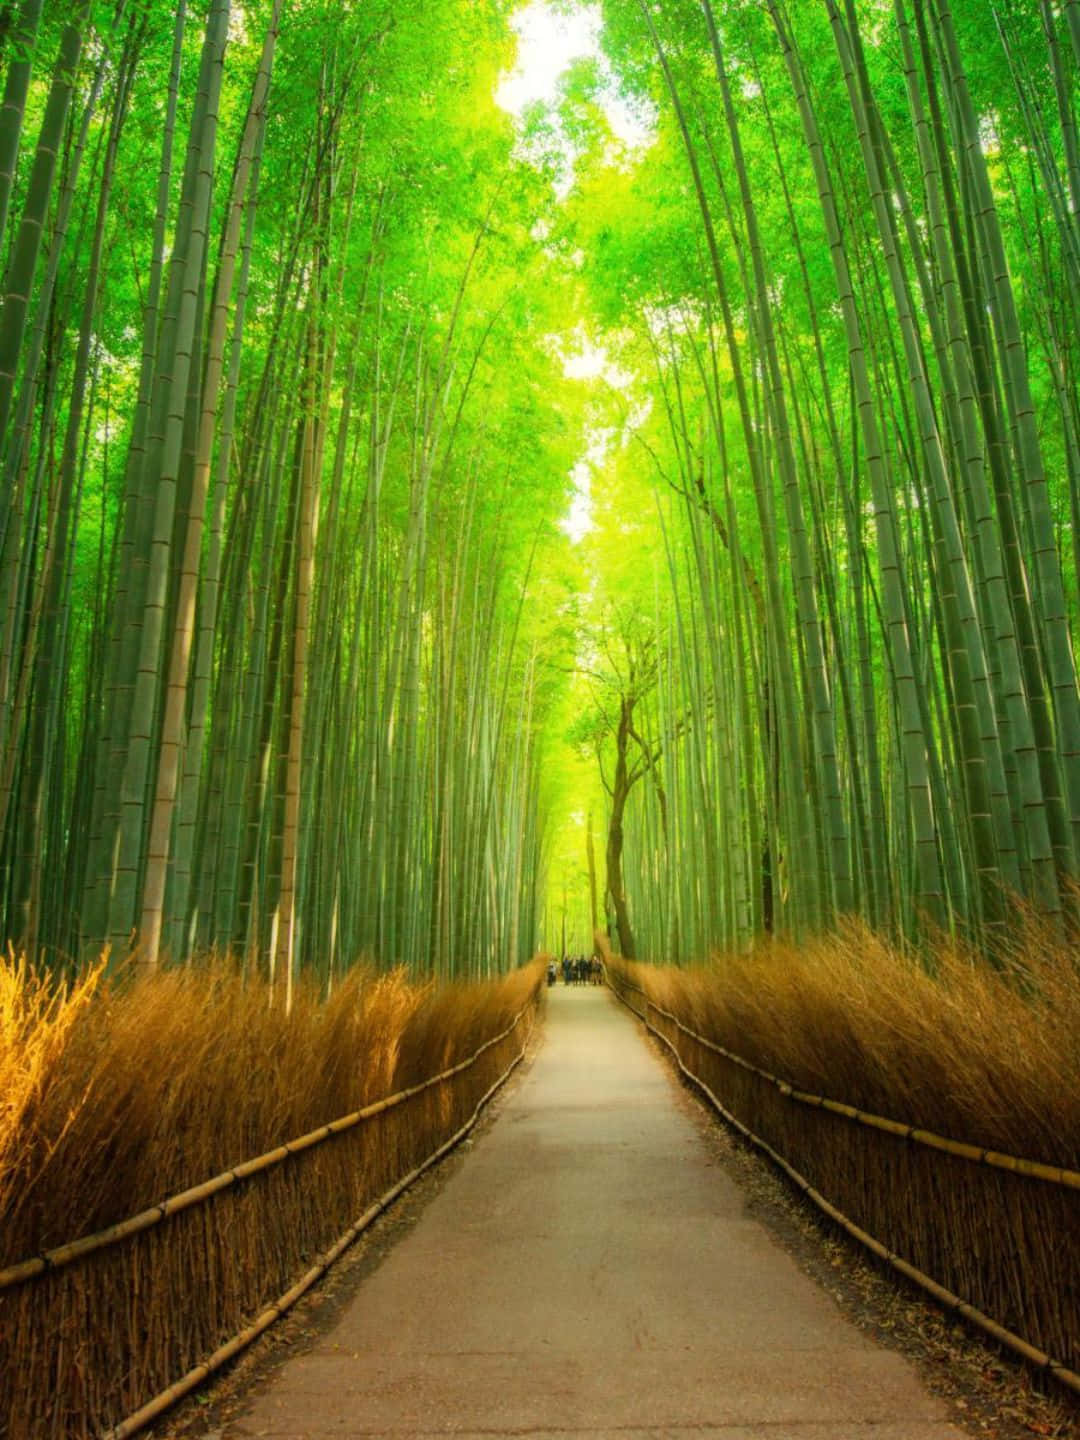 Sfondodi Bambù In 1440p, Con Percorso Ben Definito Tra Gli Alberi Di Bambù.